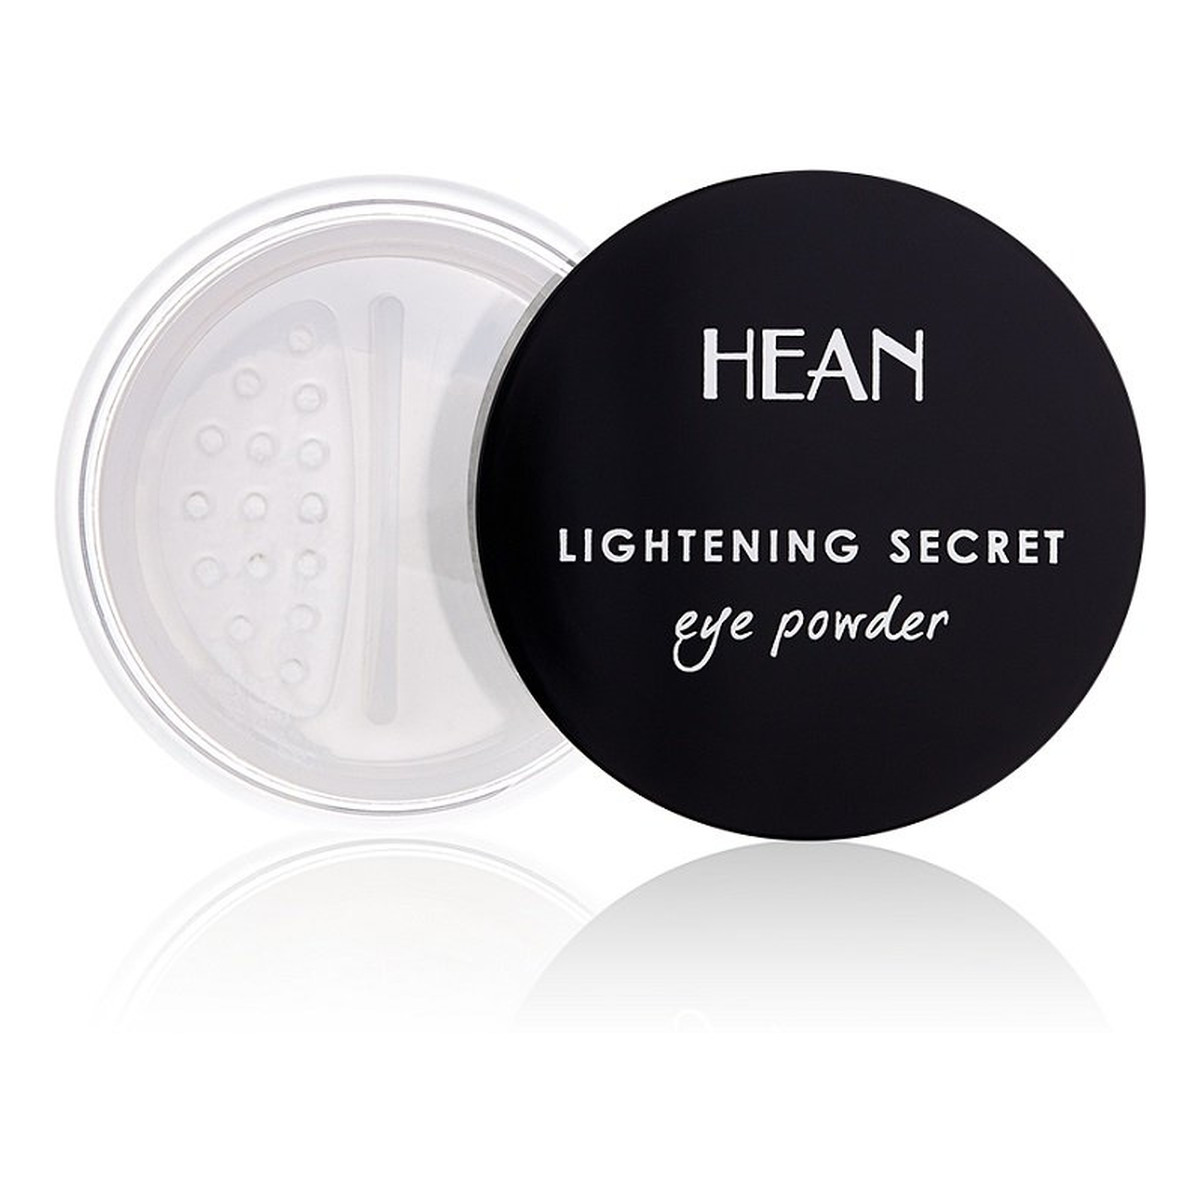 Hean Lightening Secret Eye Powder Puder rozjaśniający pod oczy 4.5g